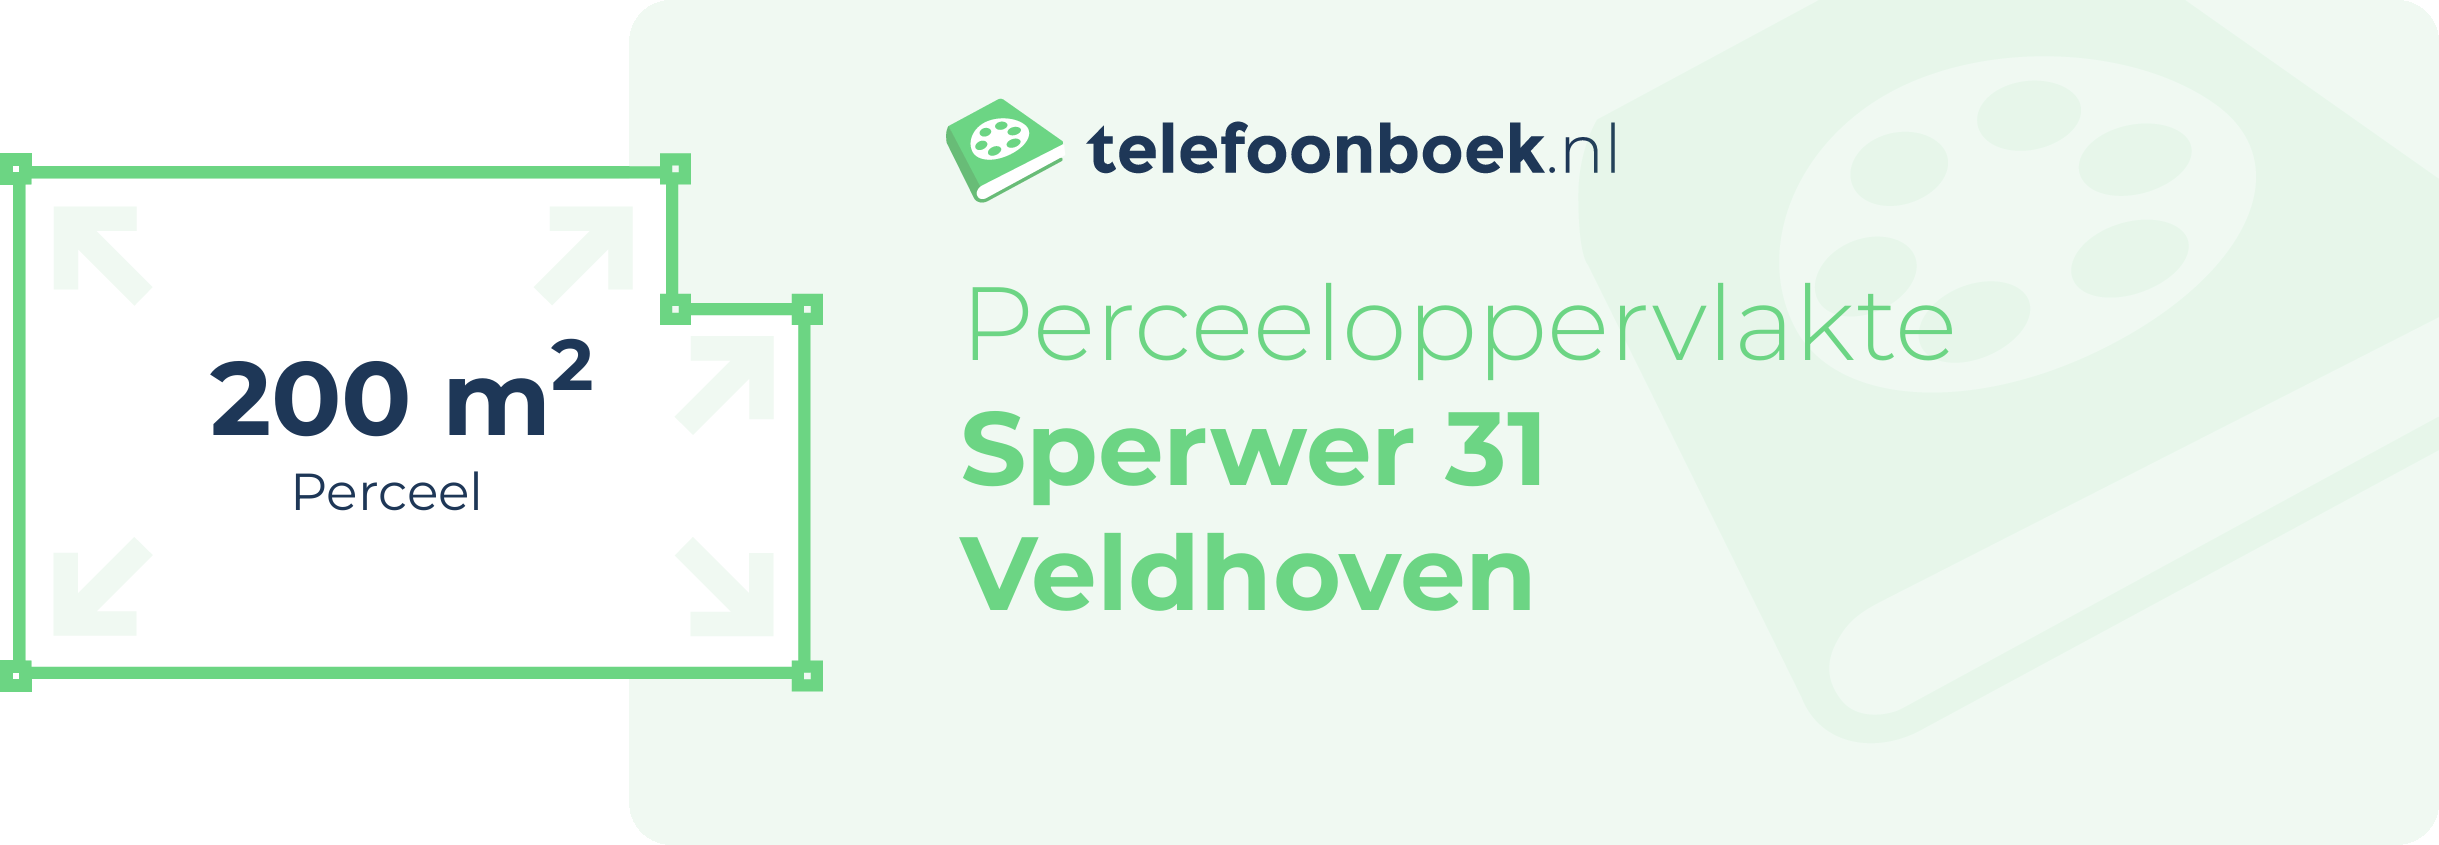 Perceeloppervlakte Sperwer 31 Veldhoven